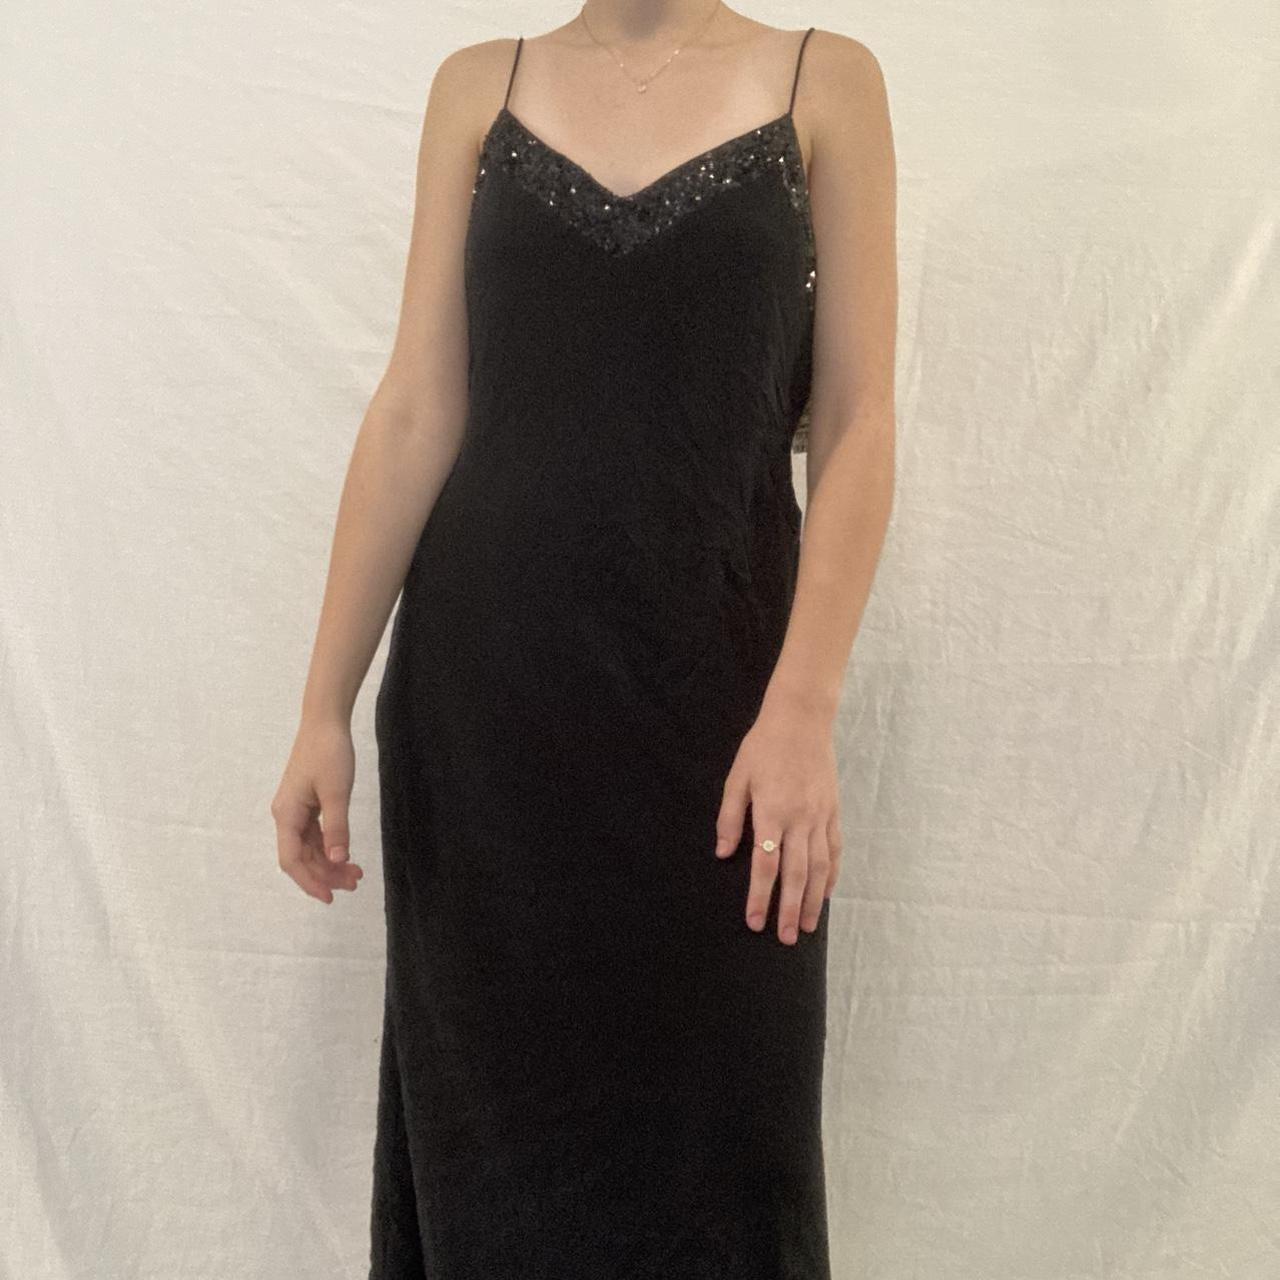 Anne Klein Women's Black Dress